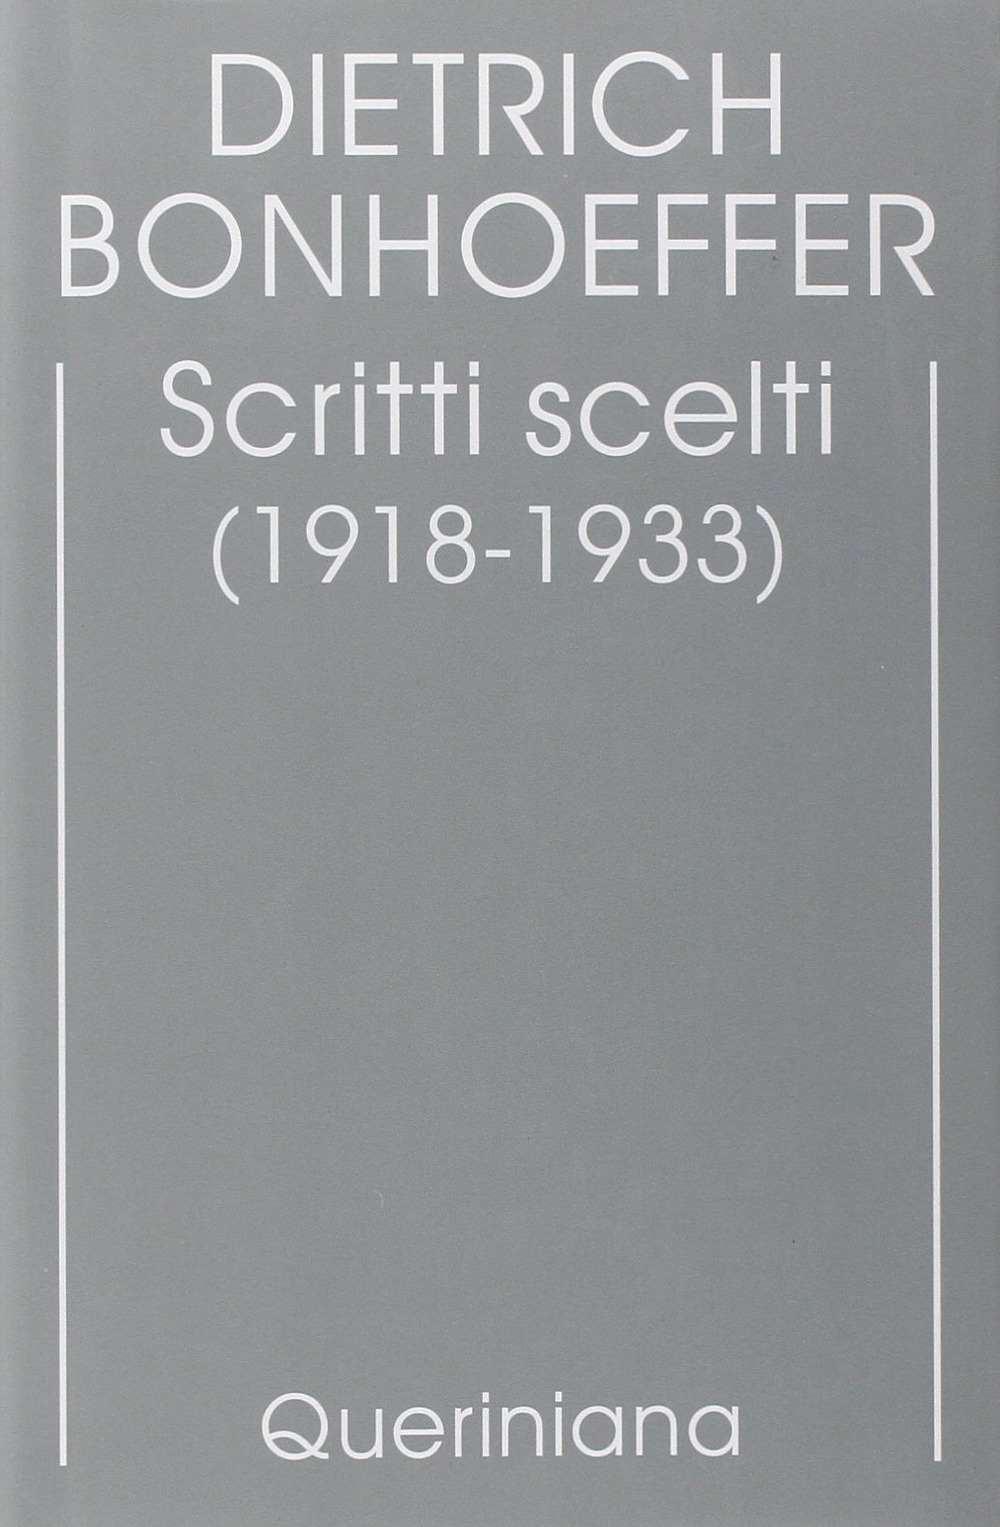 Edizione critica delle opere di D. Bonhoeffer. Vol. 9: Scritti scelti (1918-1933)